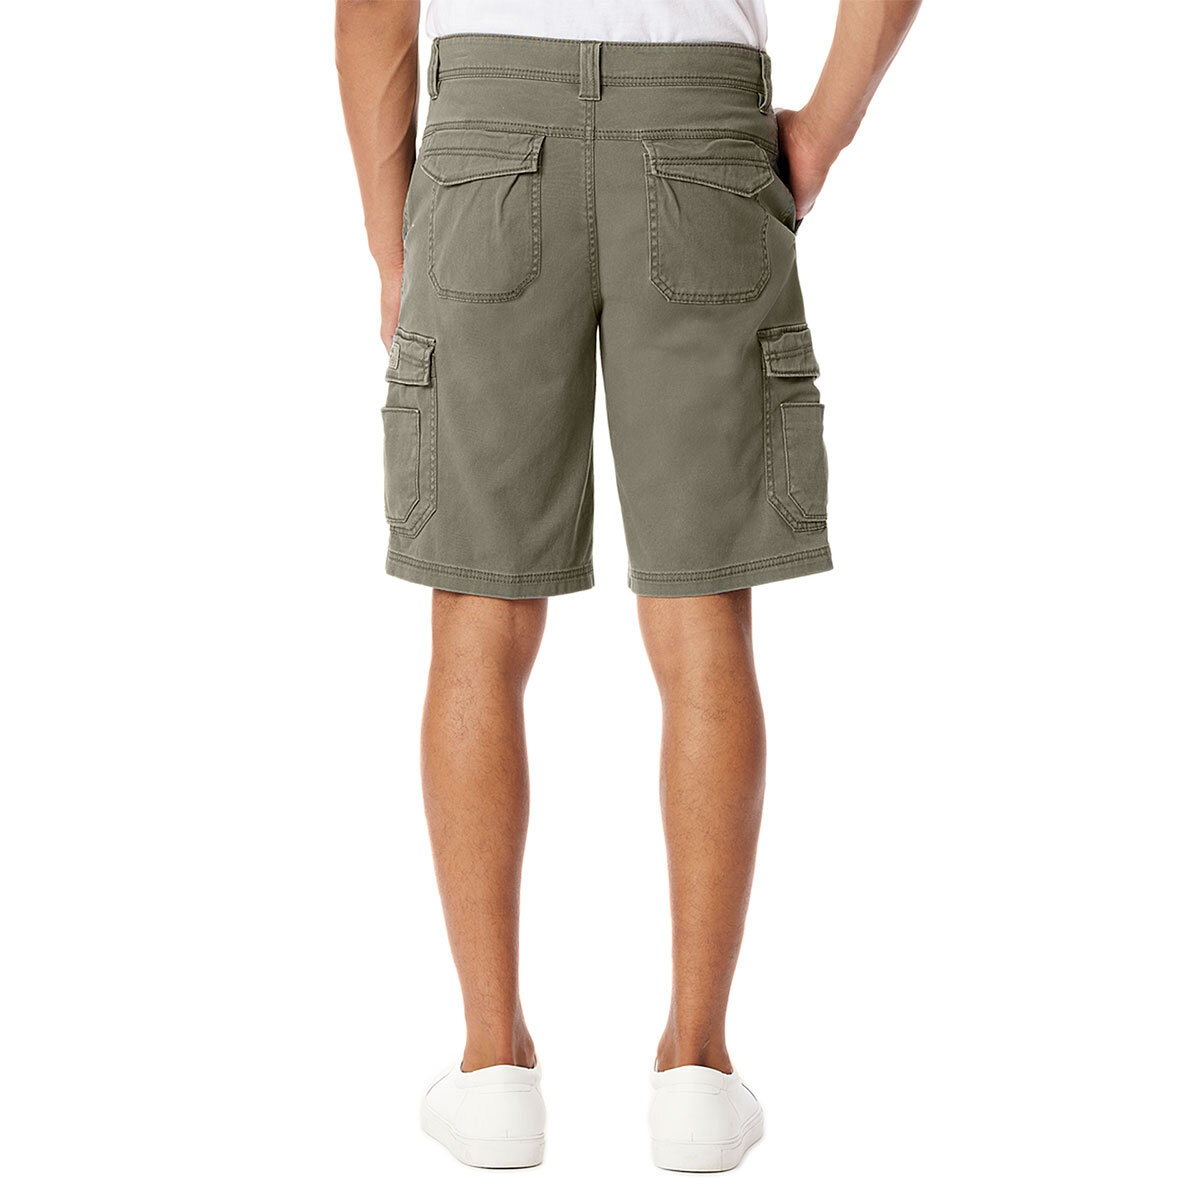 Lifestyle image of back of shorts